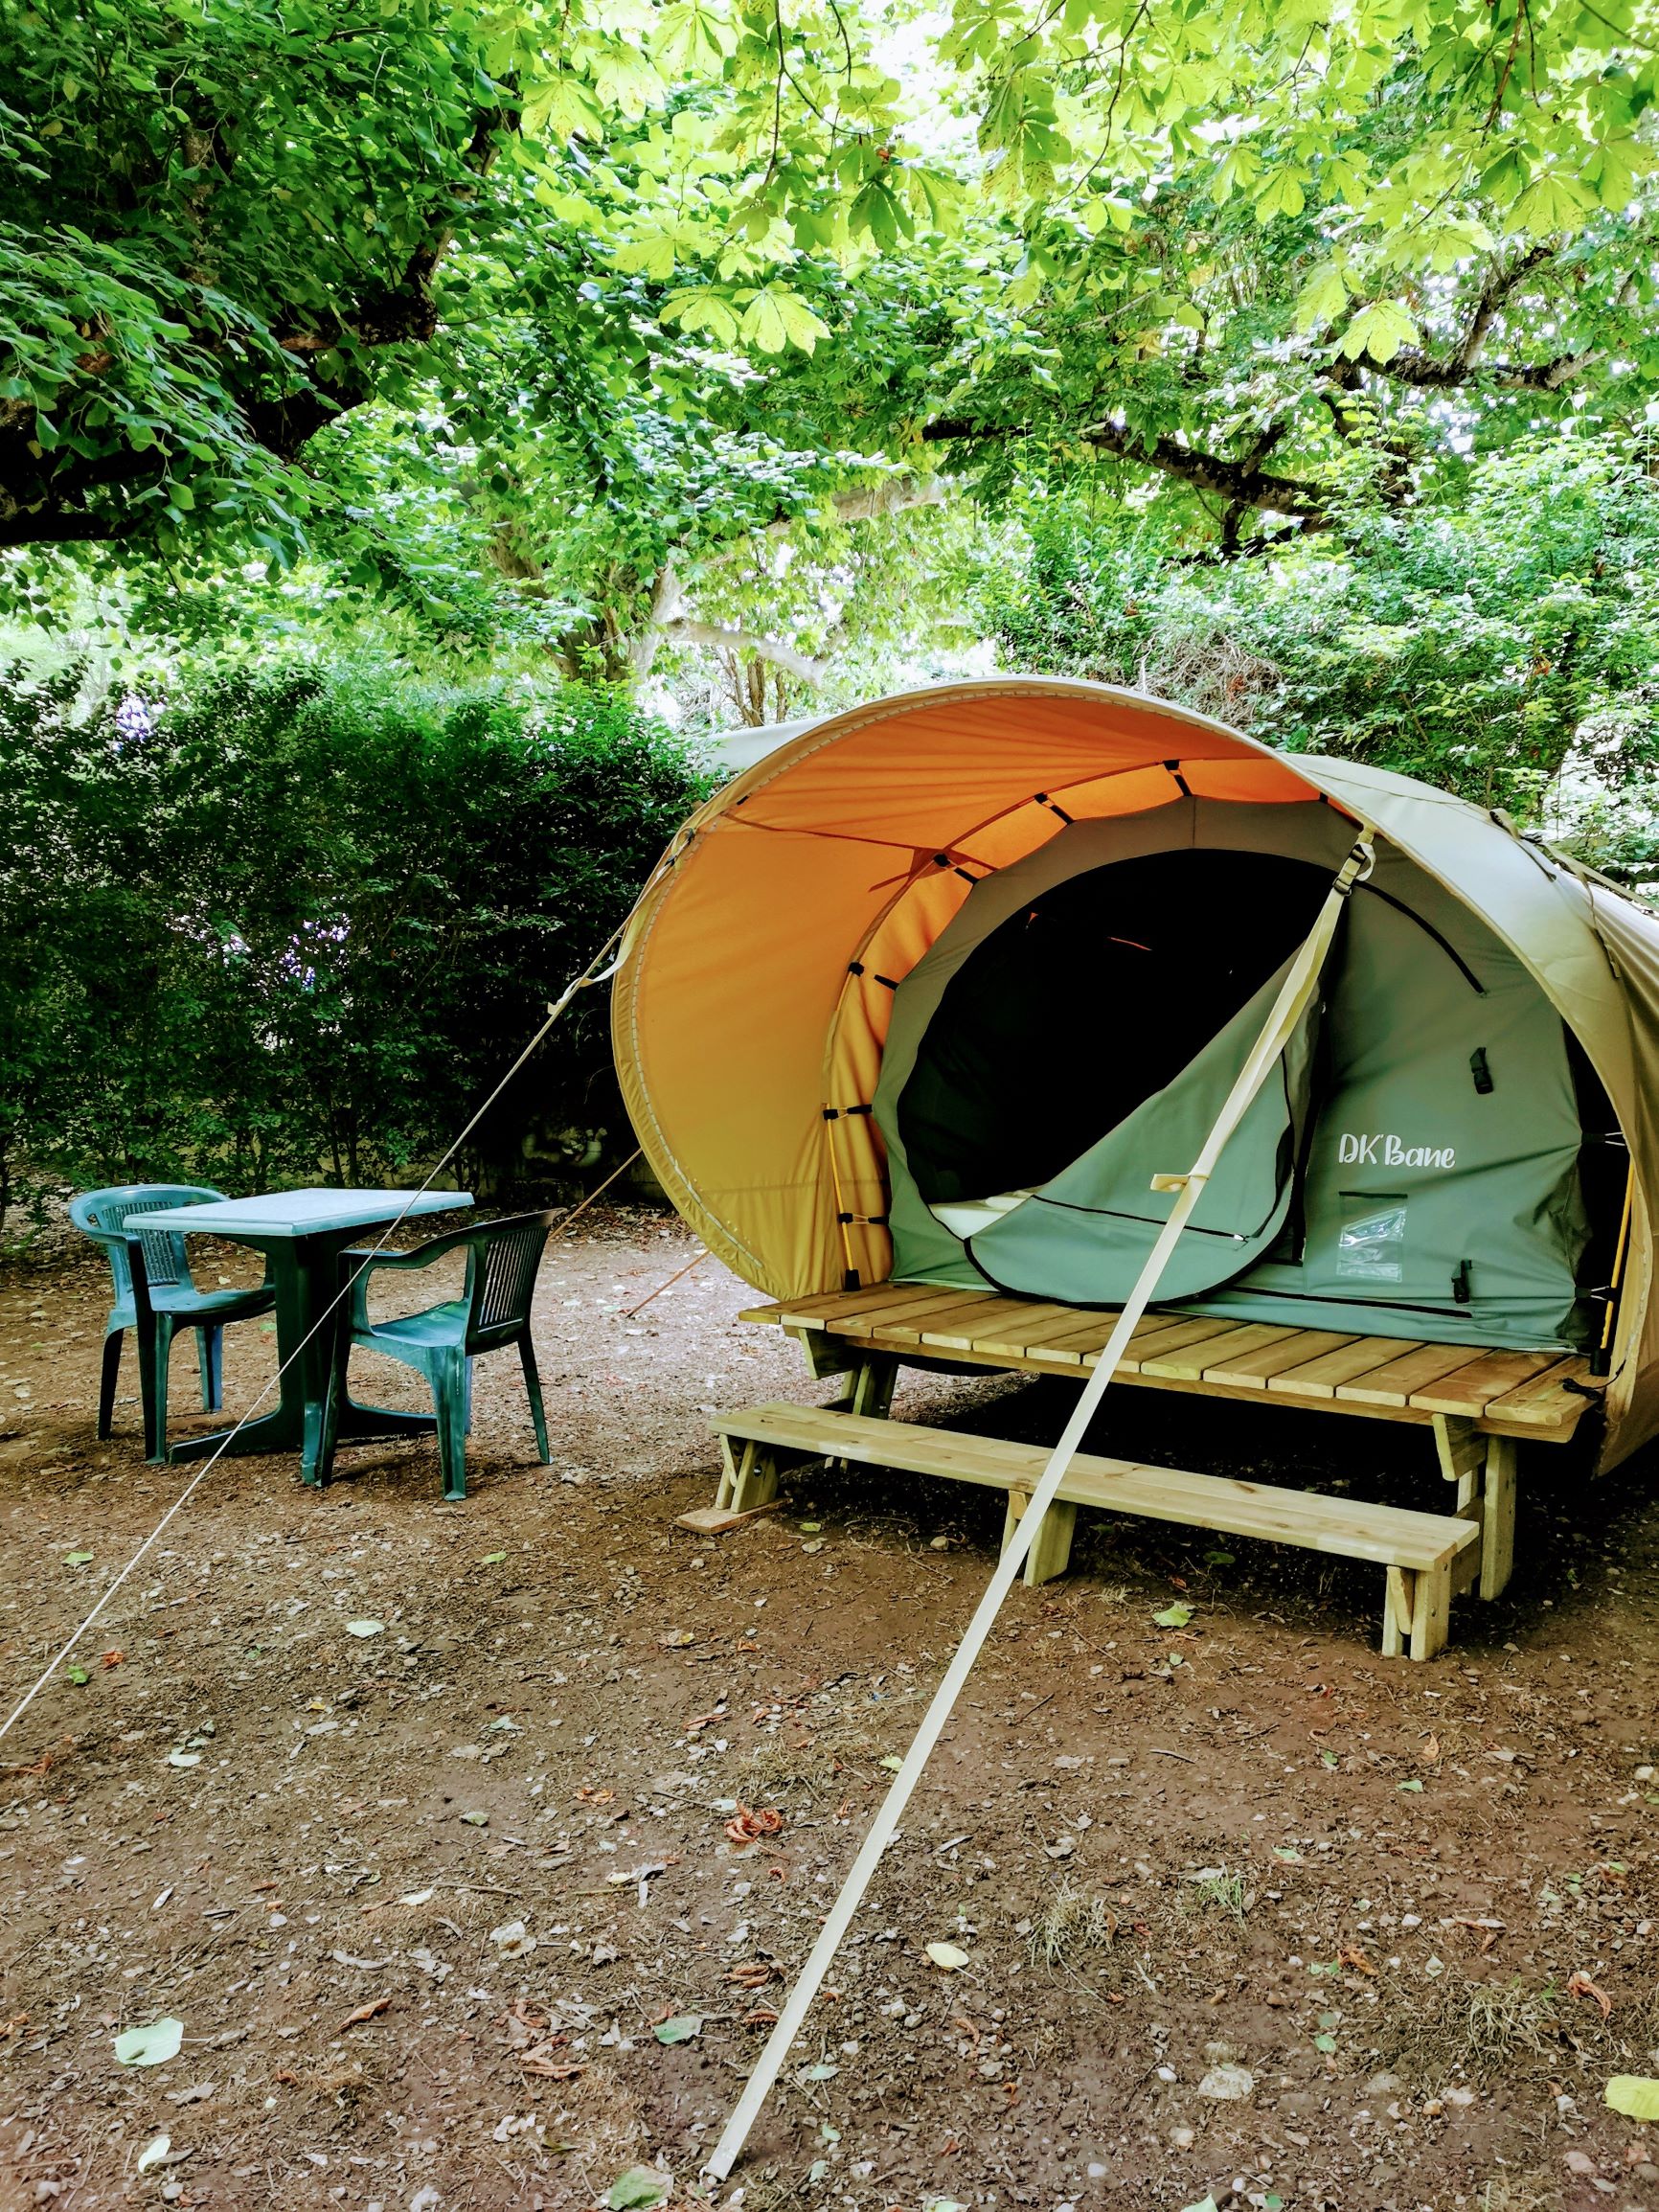 Location - Dk'bane Est Une Tente 2 Places ( 2 Matelats ) Sur Plateforme Bois - Camping LA MUSE